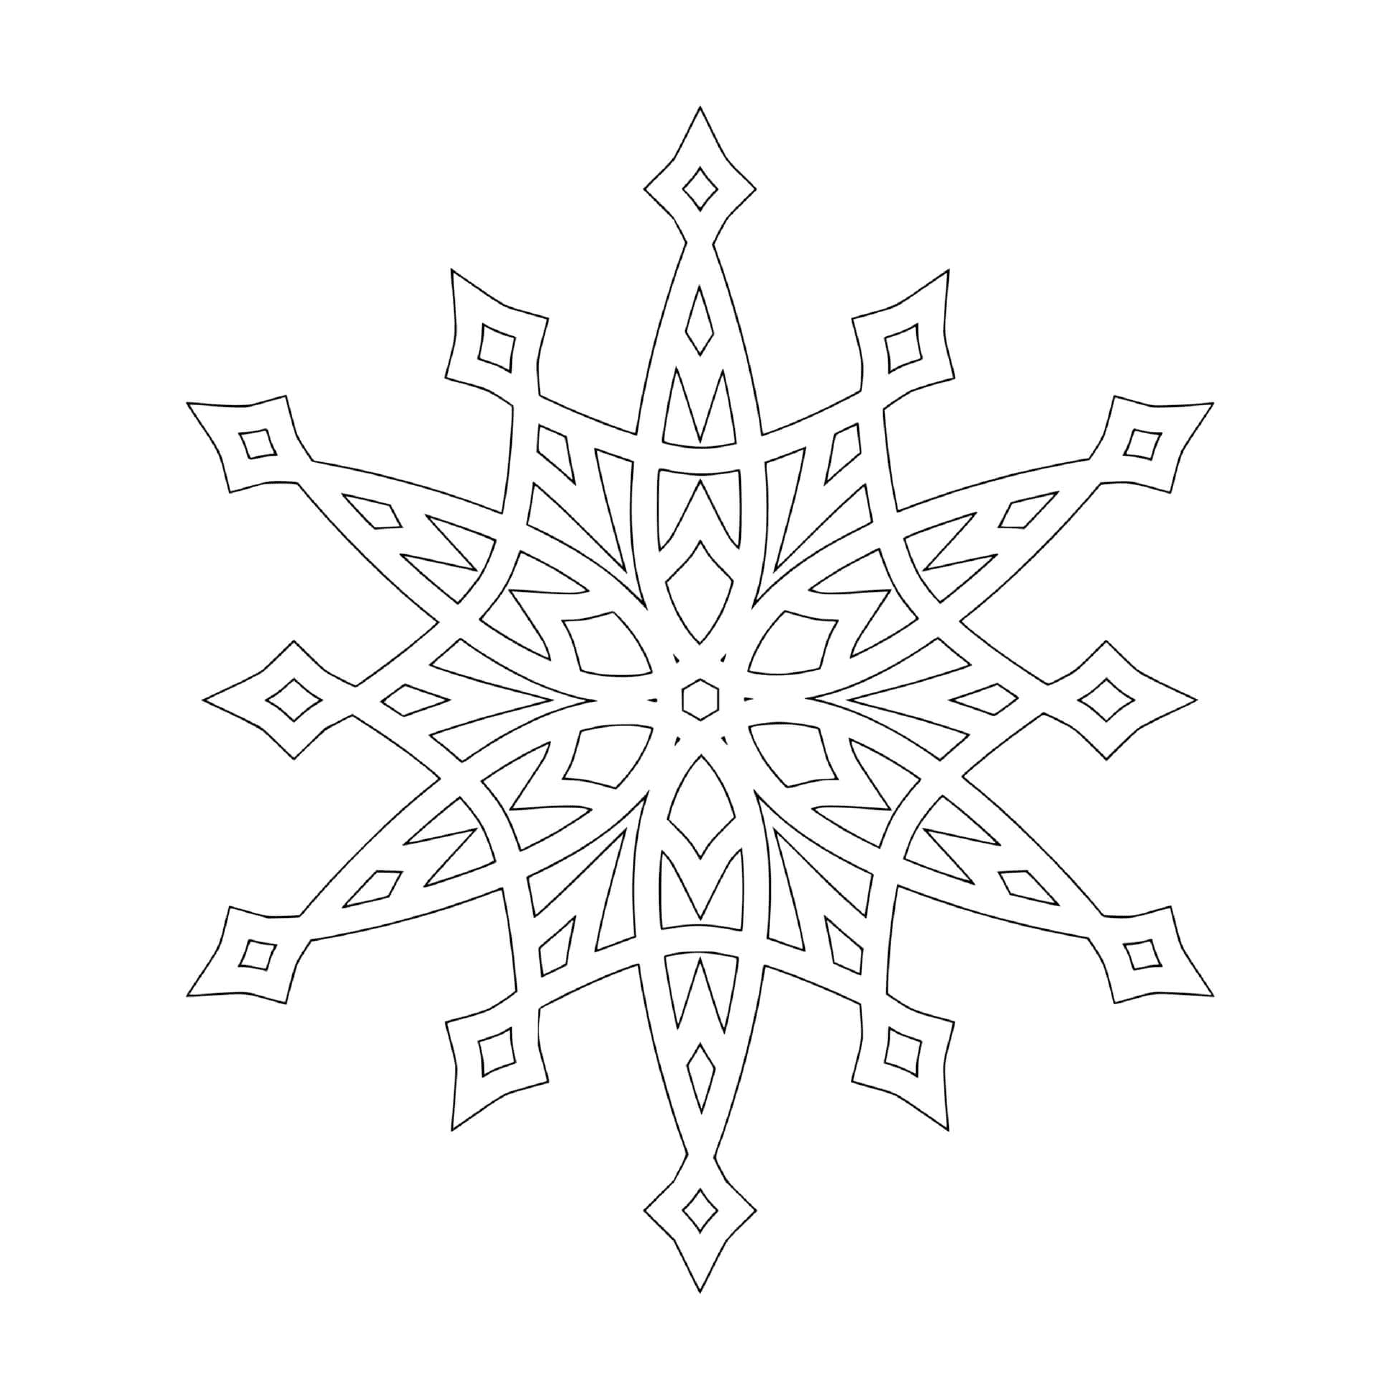  Um design complexo de floco de neve 